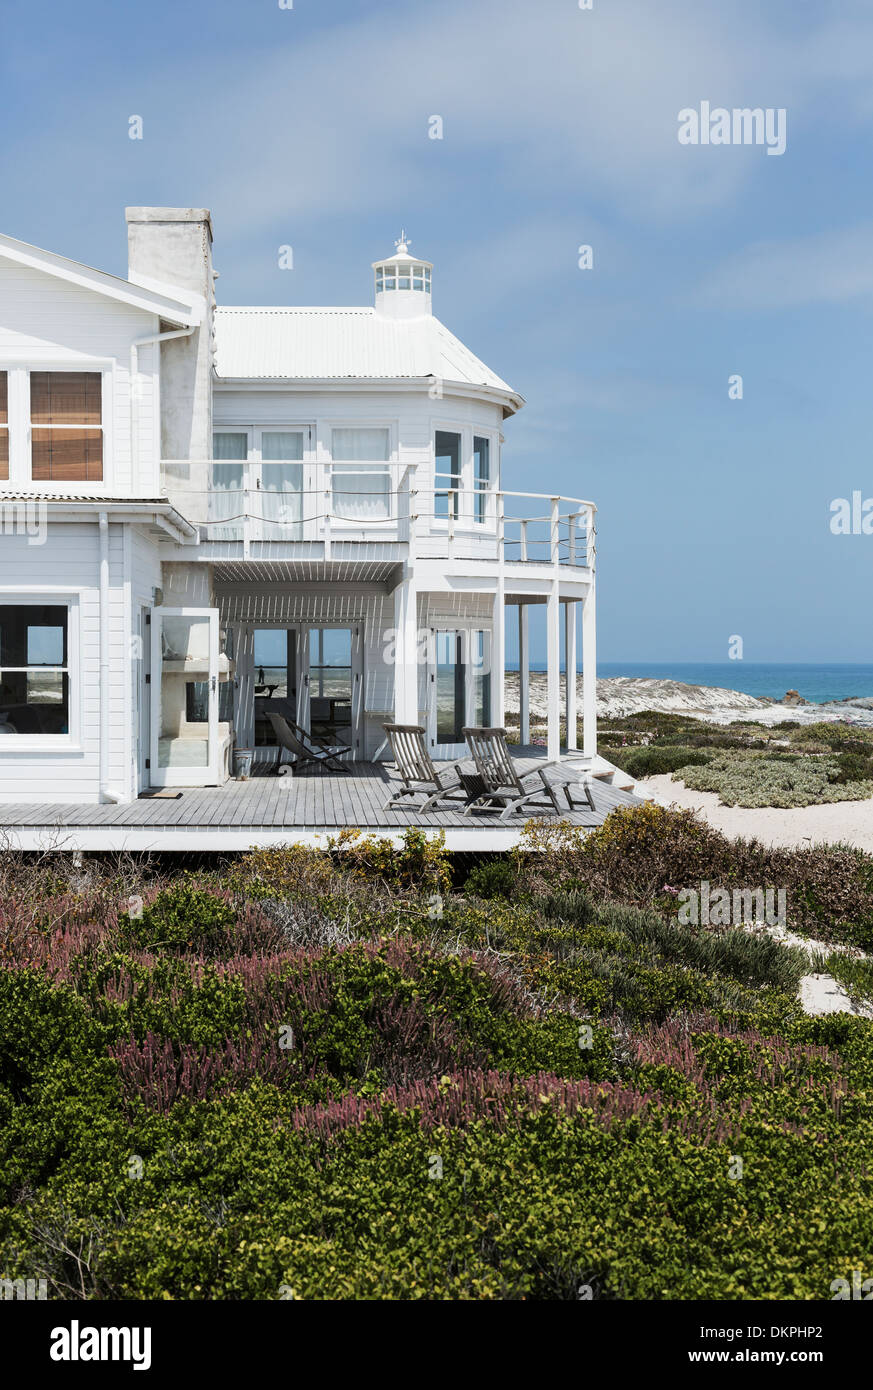 Casa sulla spiaggia immagini e fotografie stock ad alta risoluzione - Alamy